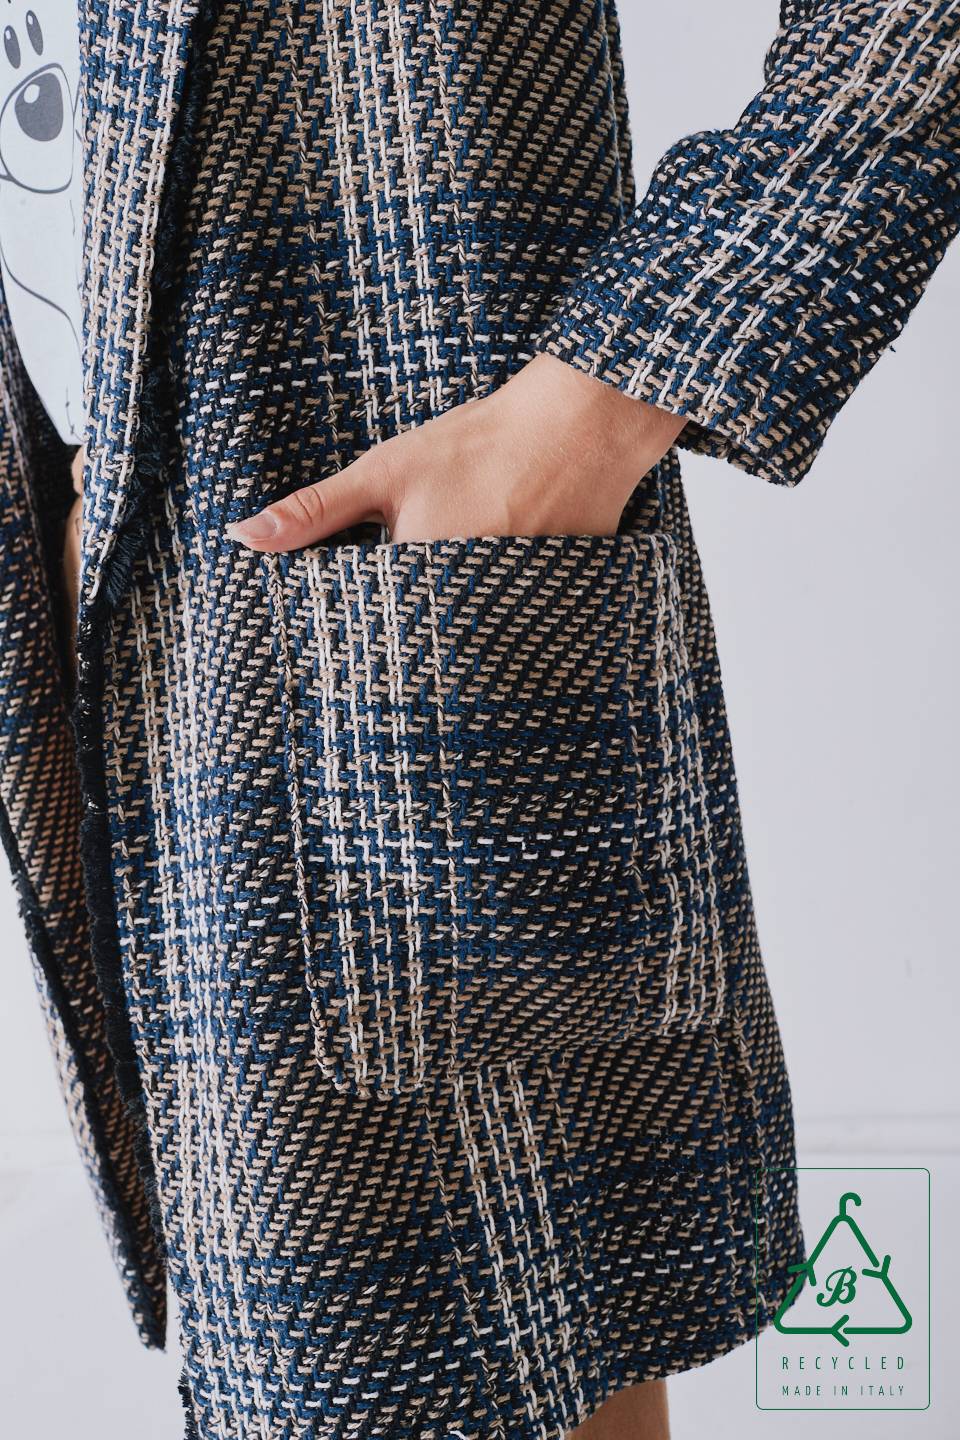 Giacca Chanel lunga in cotone riciclato cammello - Autunno - Inverno 2022 | Brend